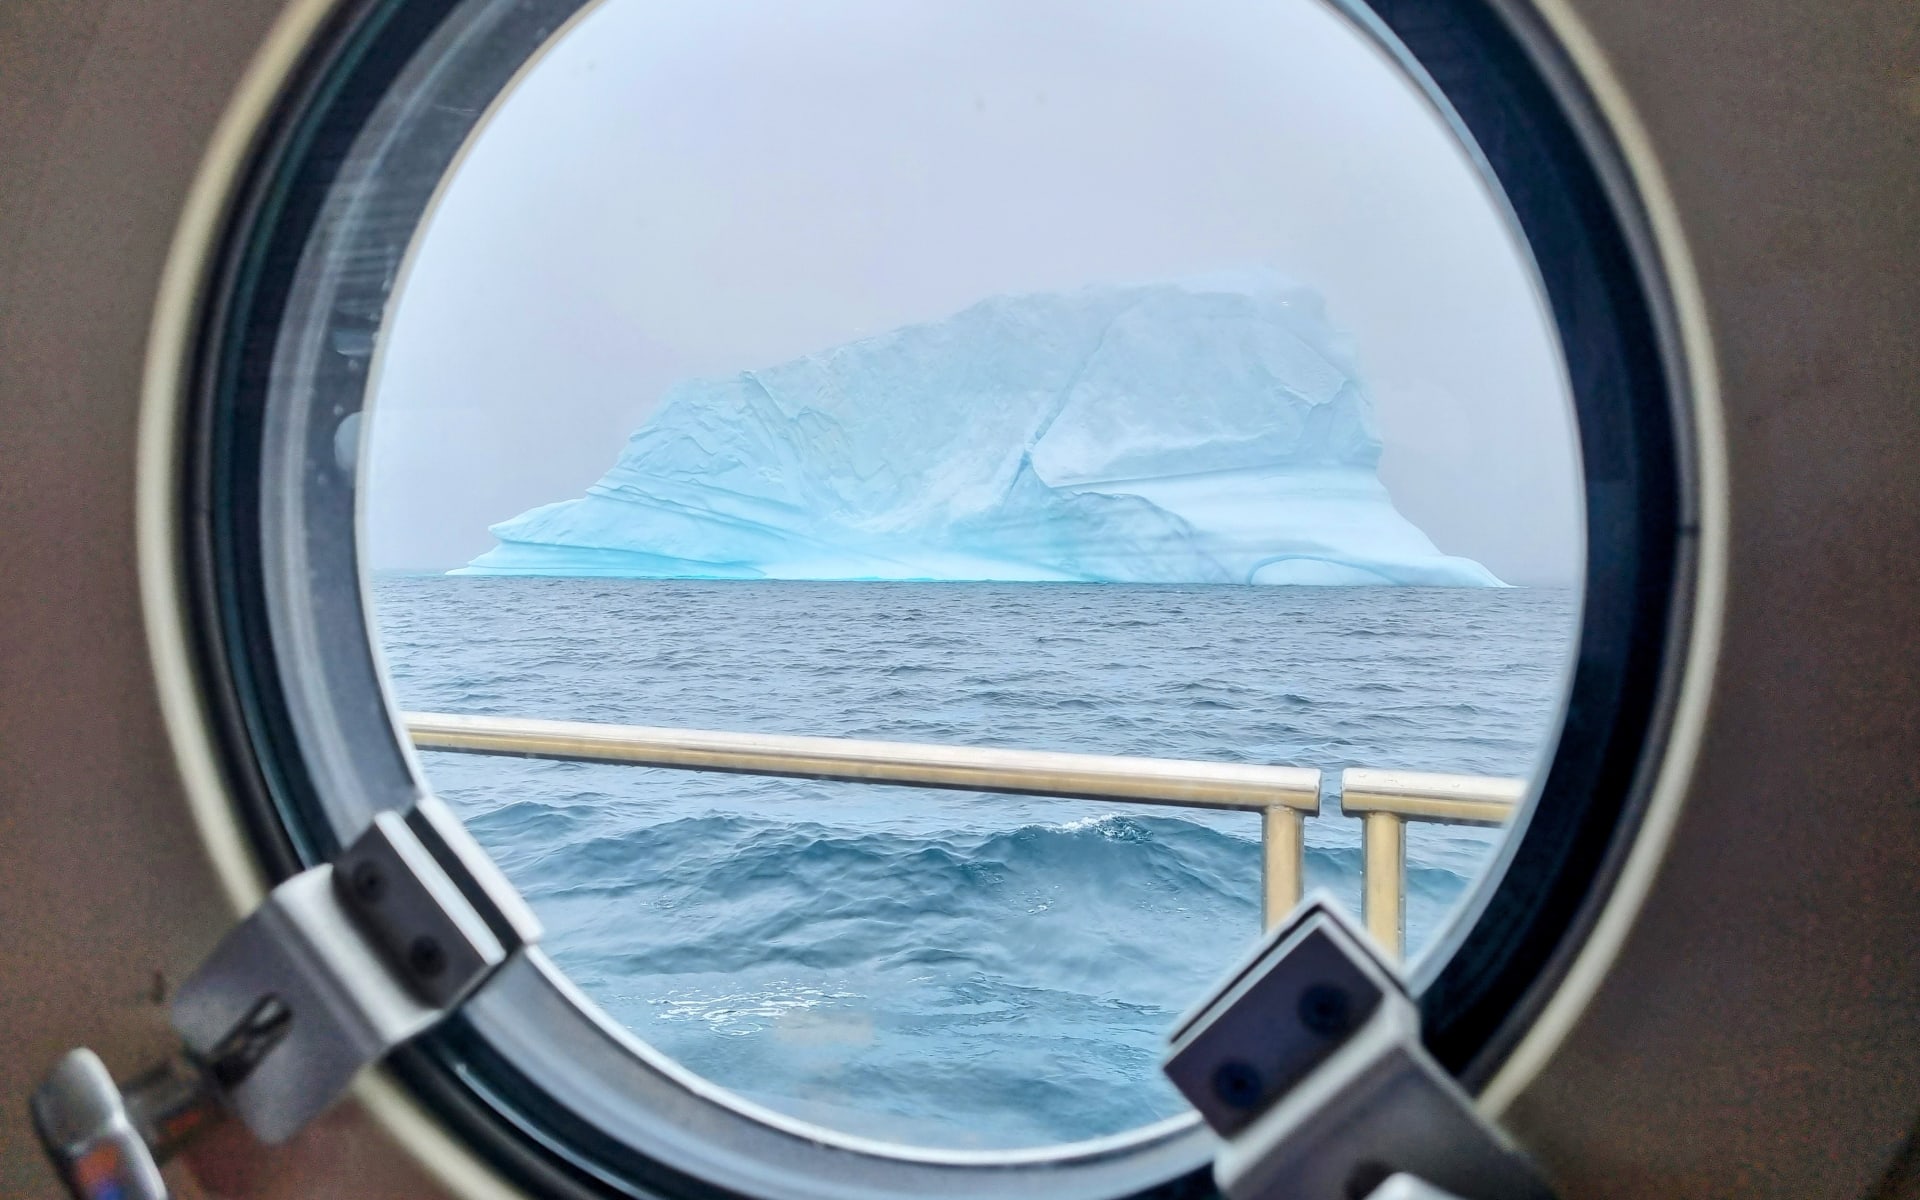 Antarctica_Iceberg_Free_Stock_Image_Pexels_CCCLars_Bugge_Aarset_zxtasb